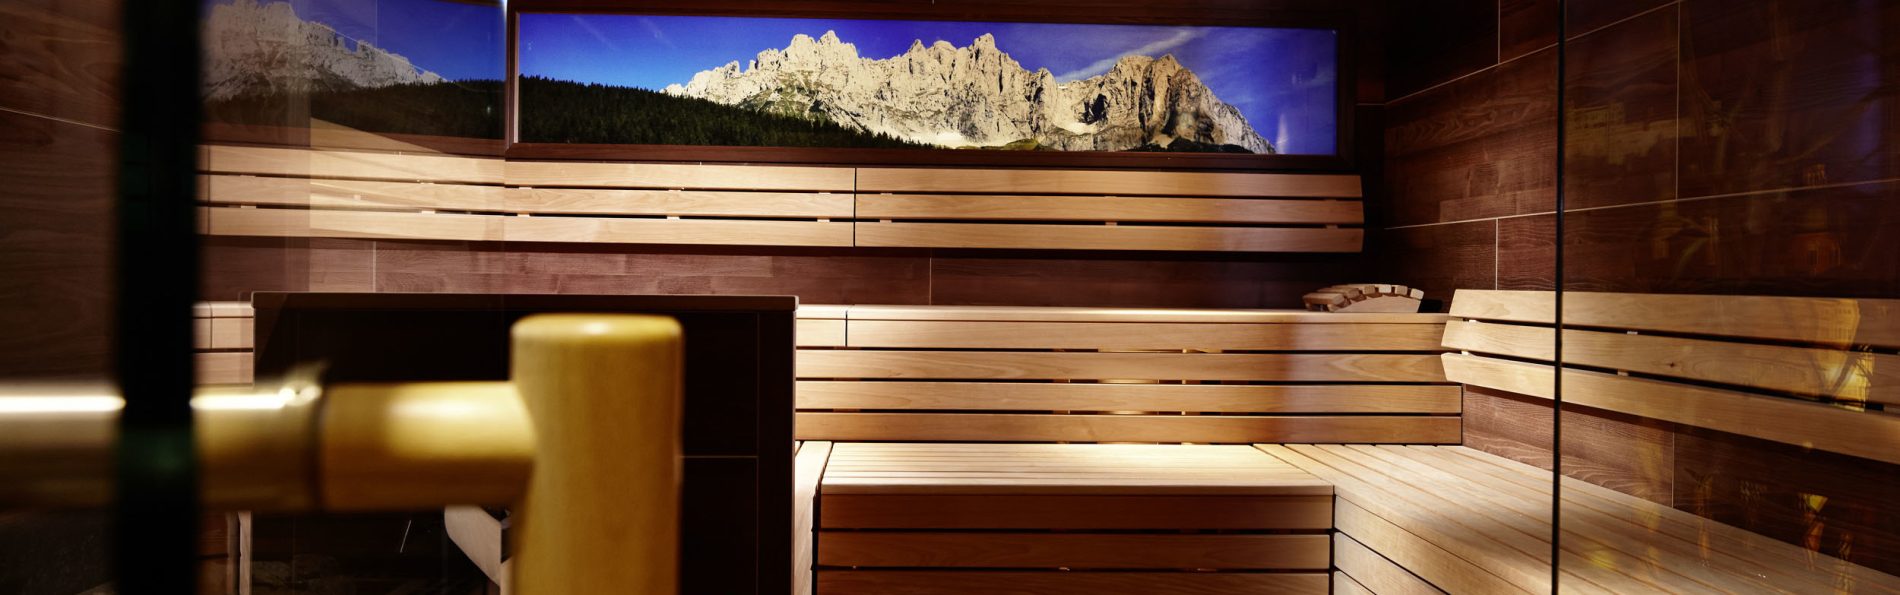 奇妙奧地利體驗–第一次 Sauna就上手 細部桑拿流程篇